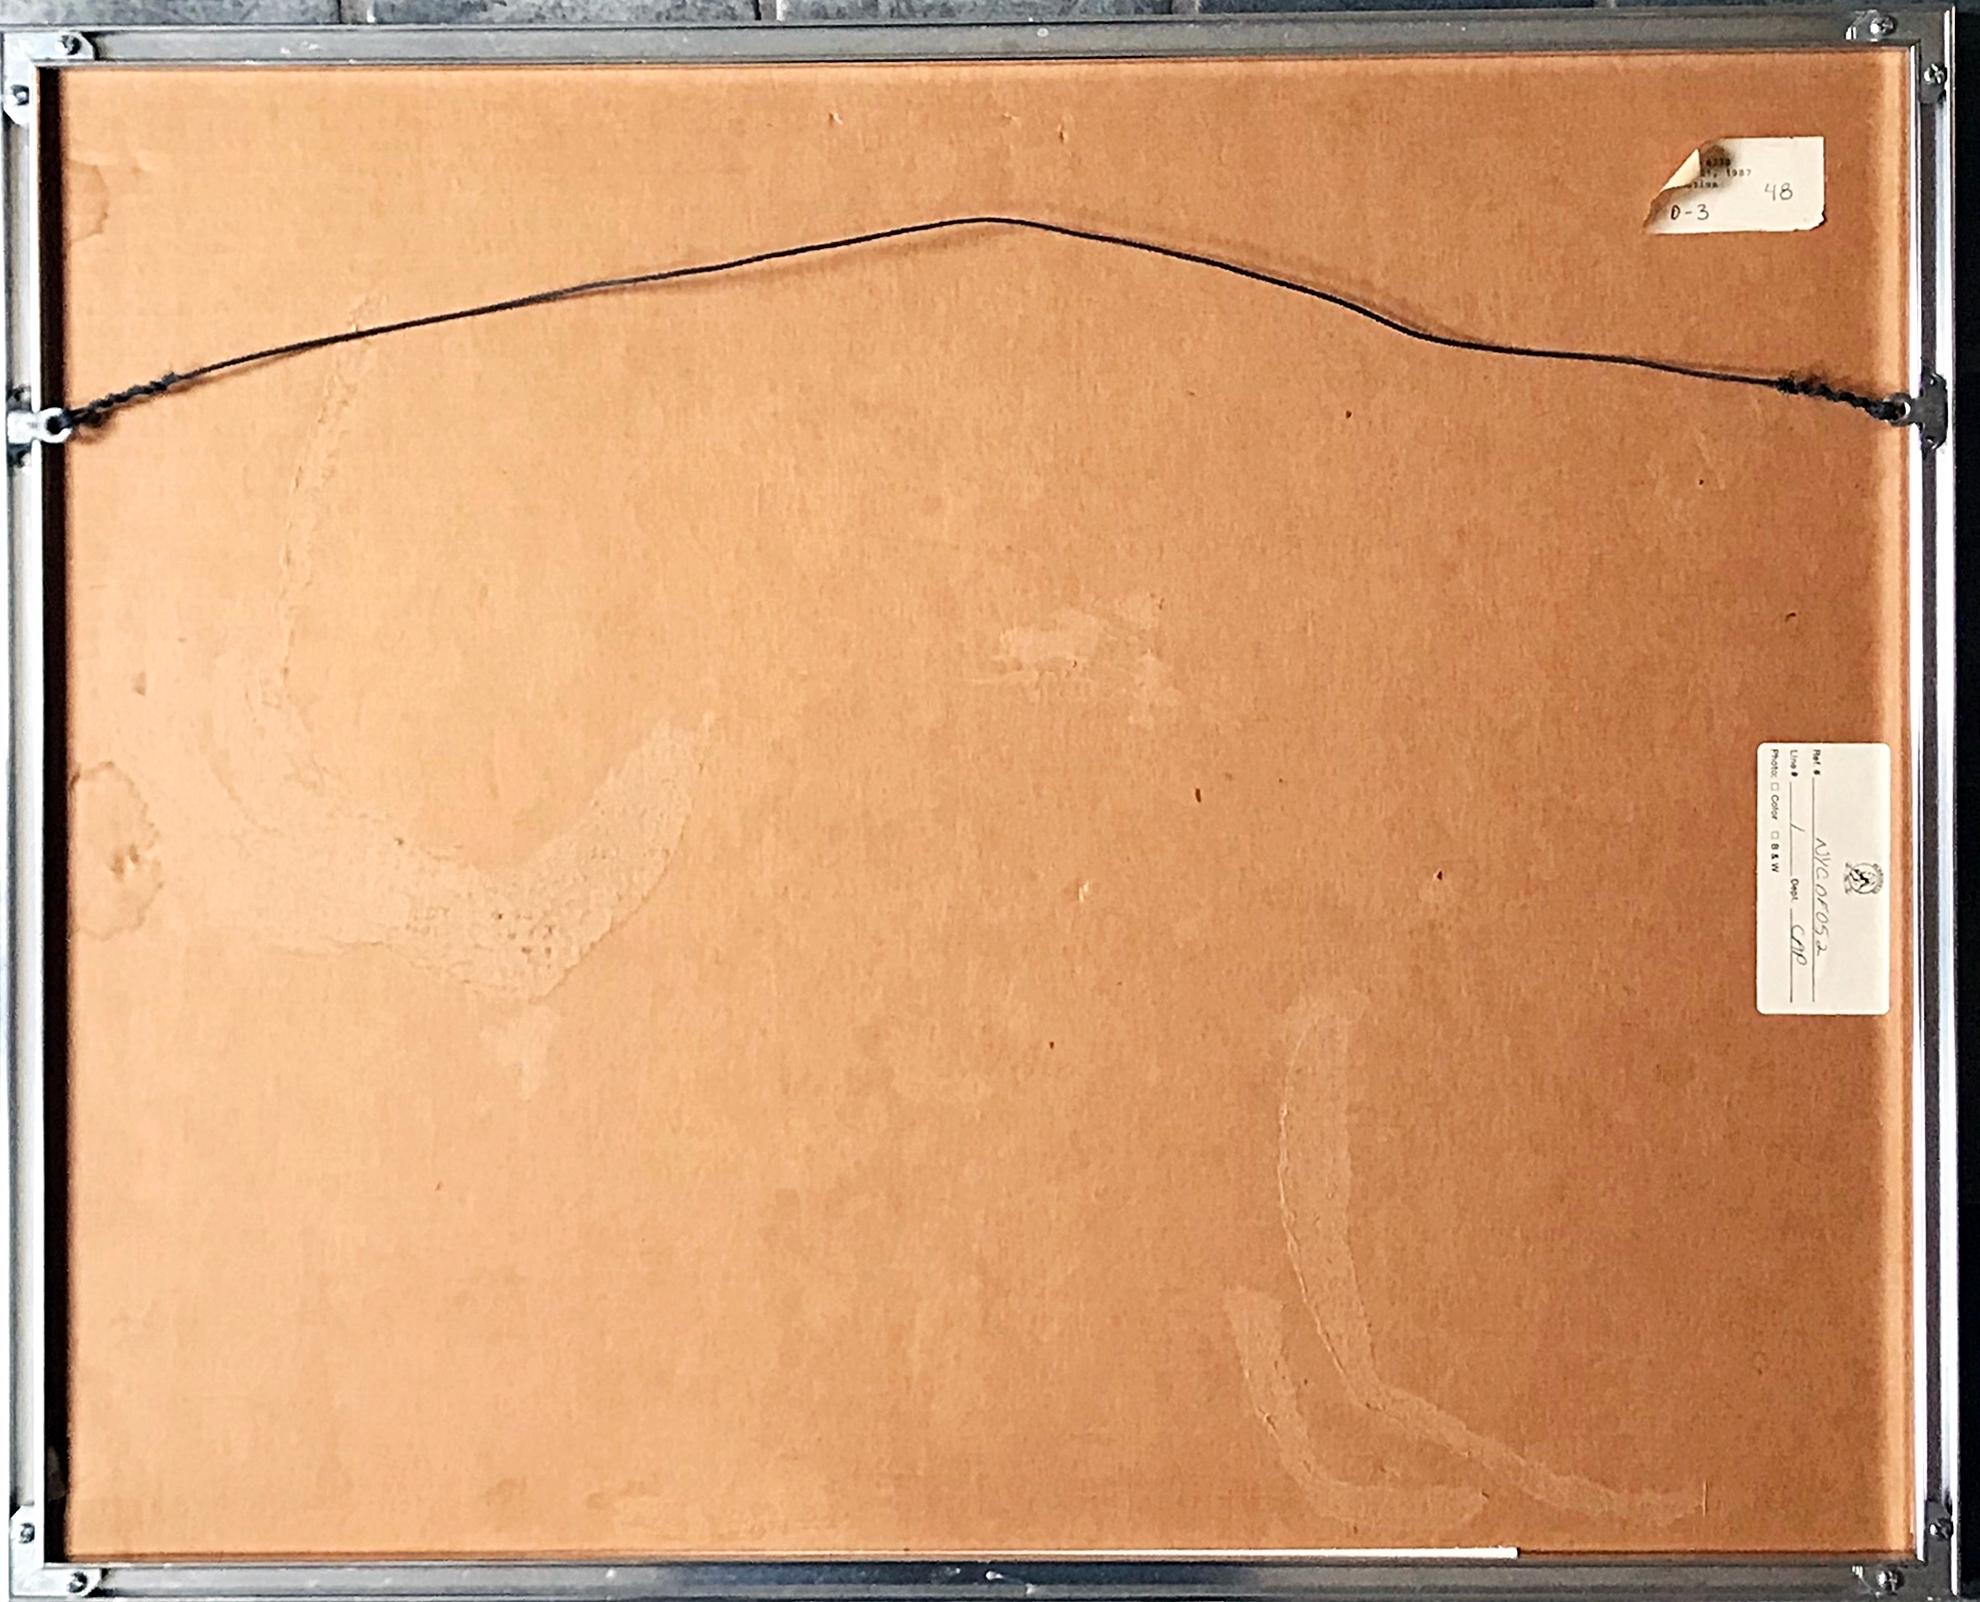 Mary Frank
Ohne Titel Abstrakt-expressionistische Zeichnung aus der Mitte des Jahrhunderts, 1965
Bleistift und Tusche Lavierung auf Papier
Signiert und datiert 1965 auf der Vorderseite
Dies ist ein einzigartiges Werk
Vintage-Rahmen mit Christie's